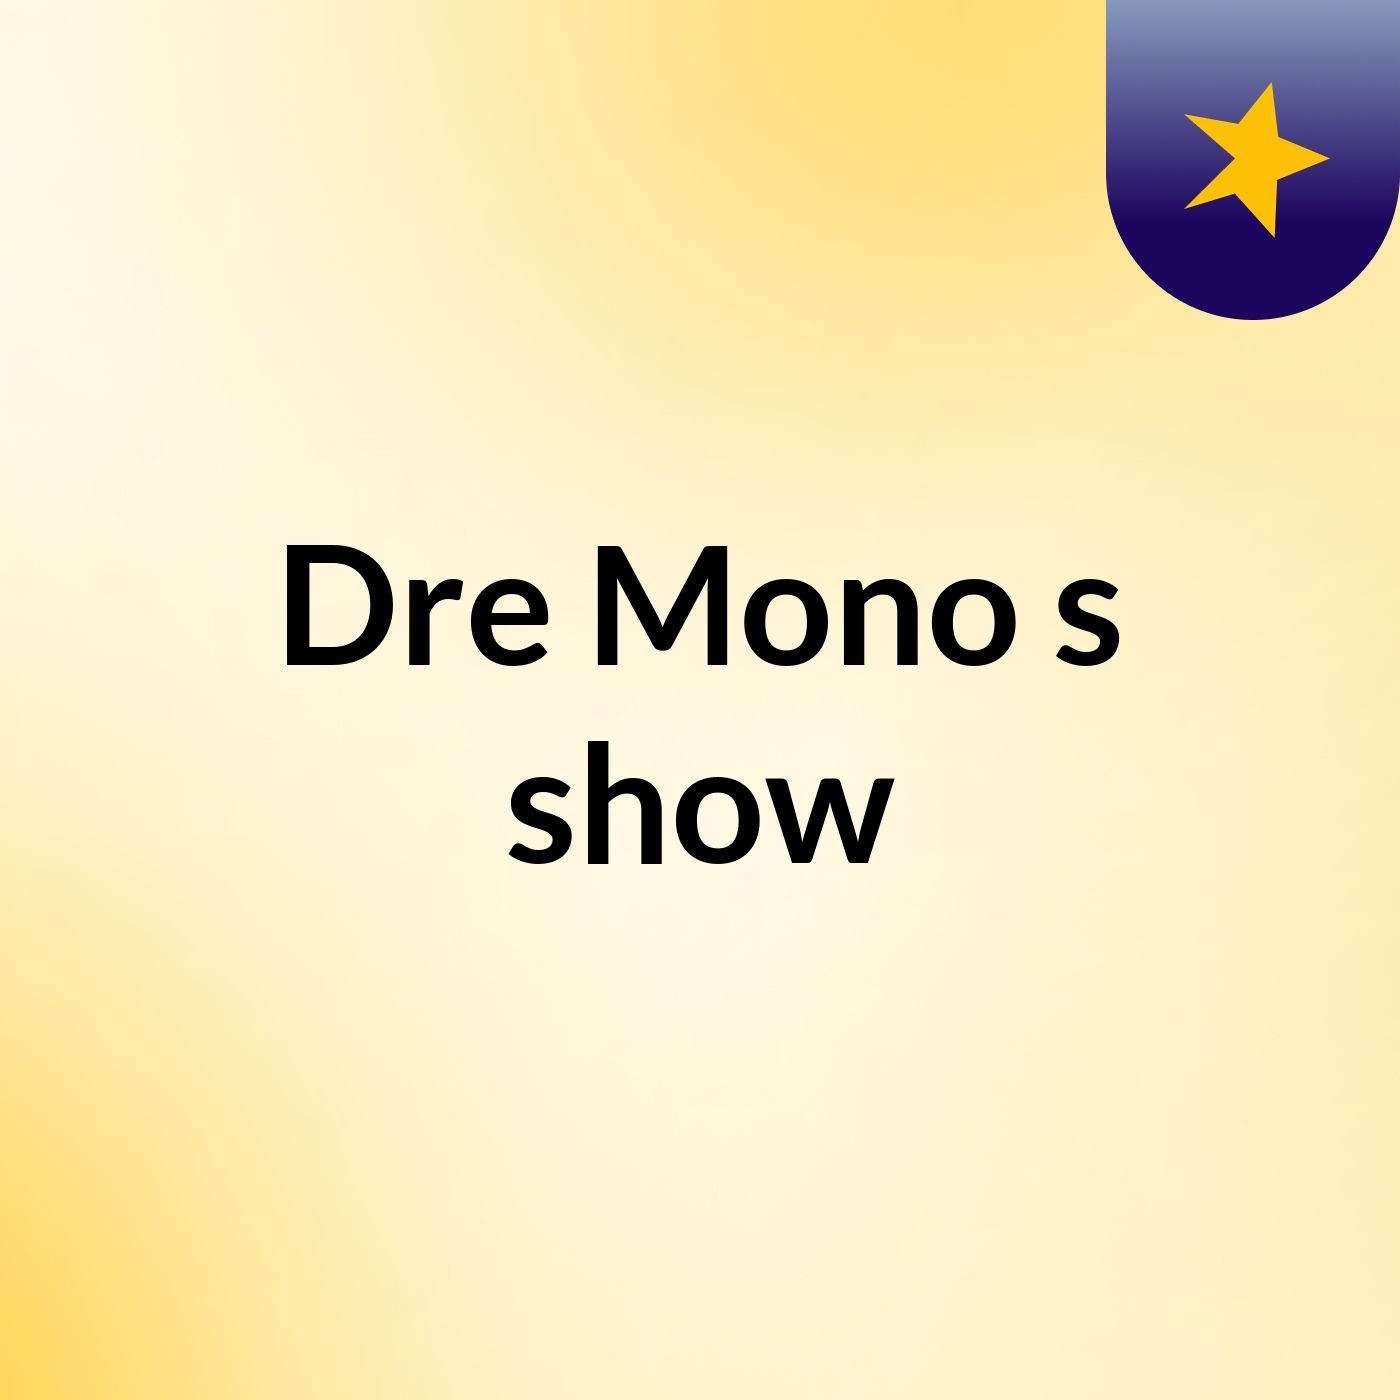 Dre Mono's show